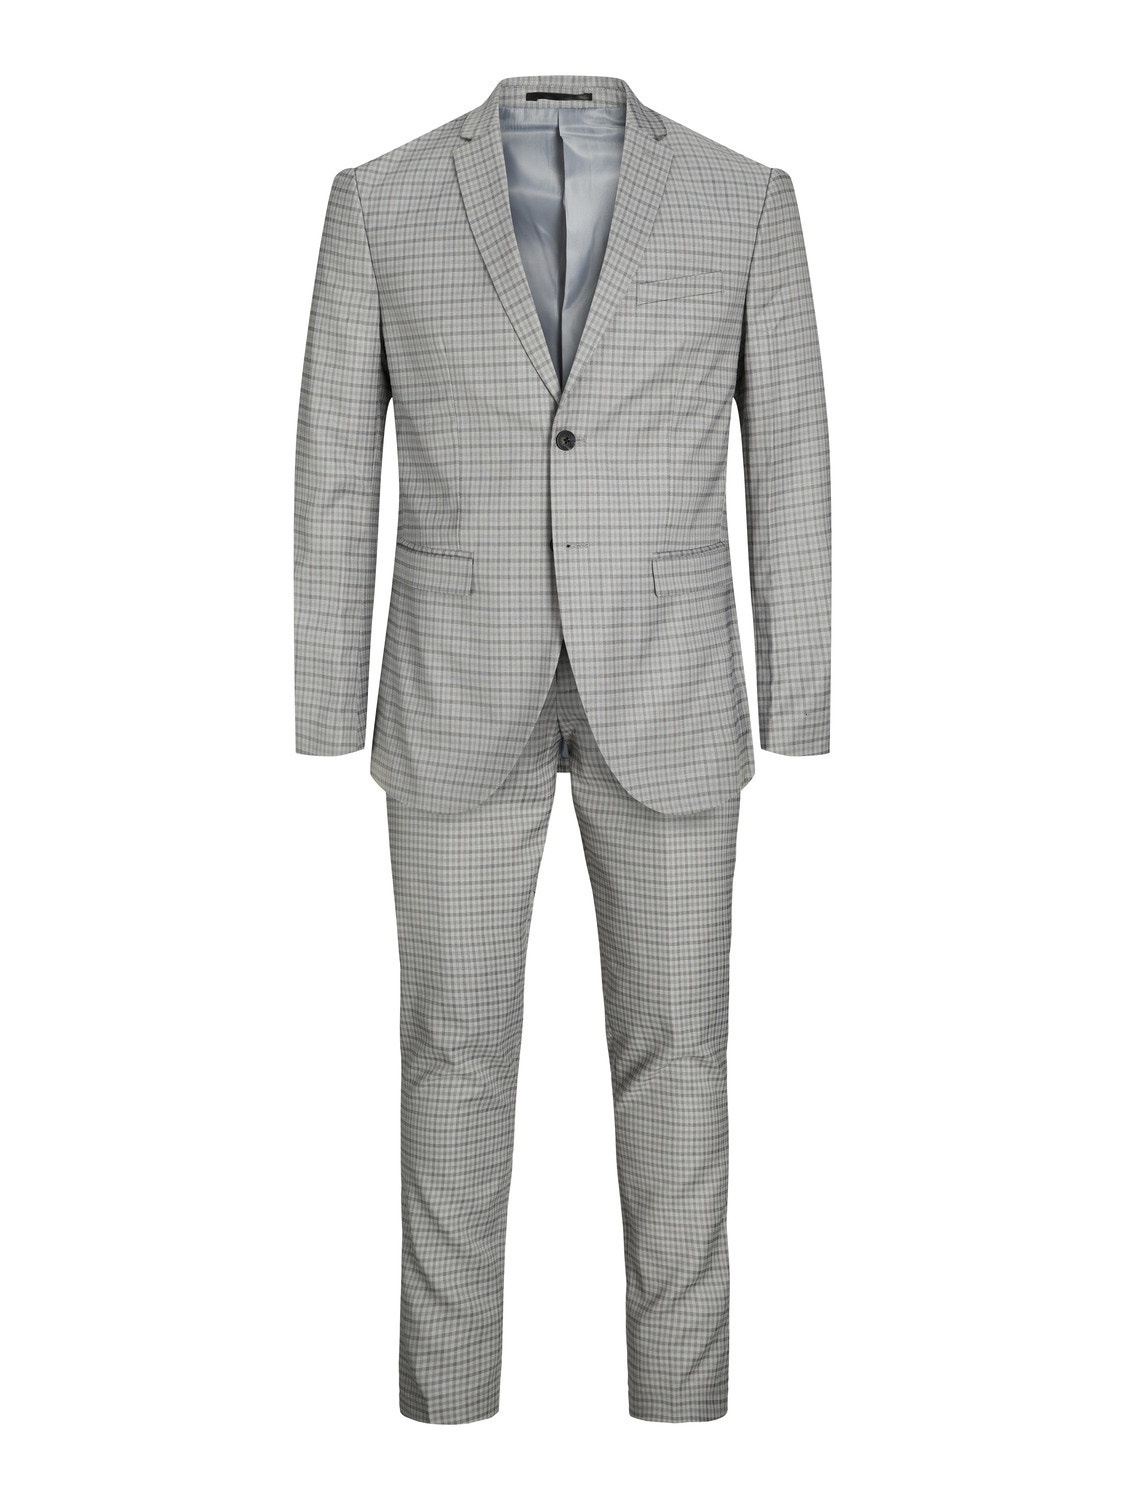 Larr Brio Metro Slim Fit Suit Pant in Light Grey – Hornor & Harrison